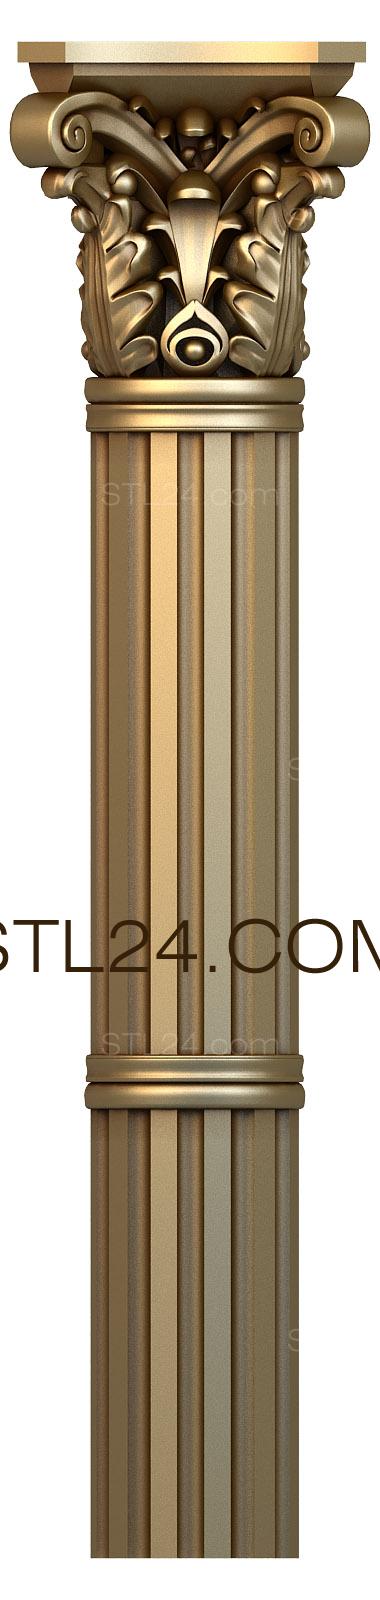 3d stl модель колонны, файл для ЧПУ станка